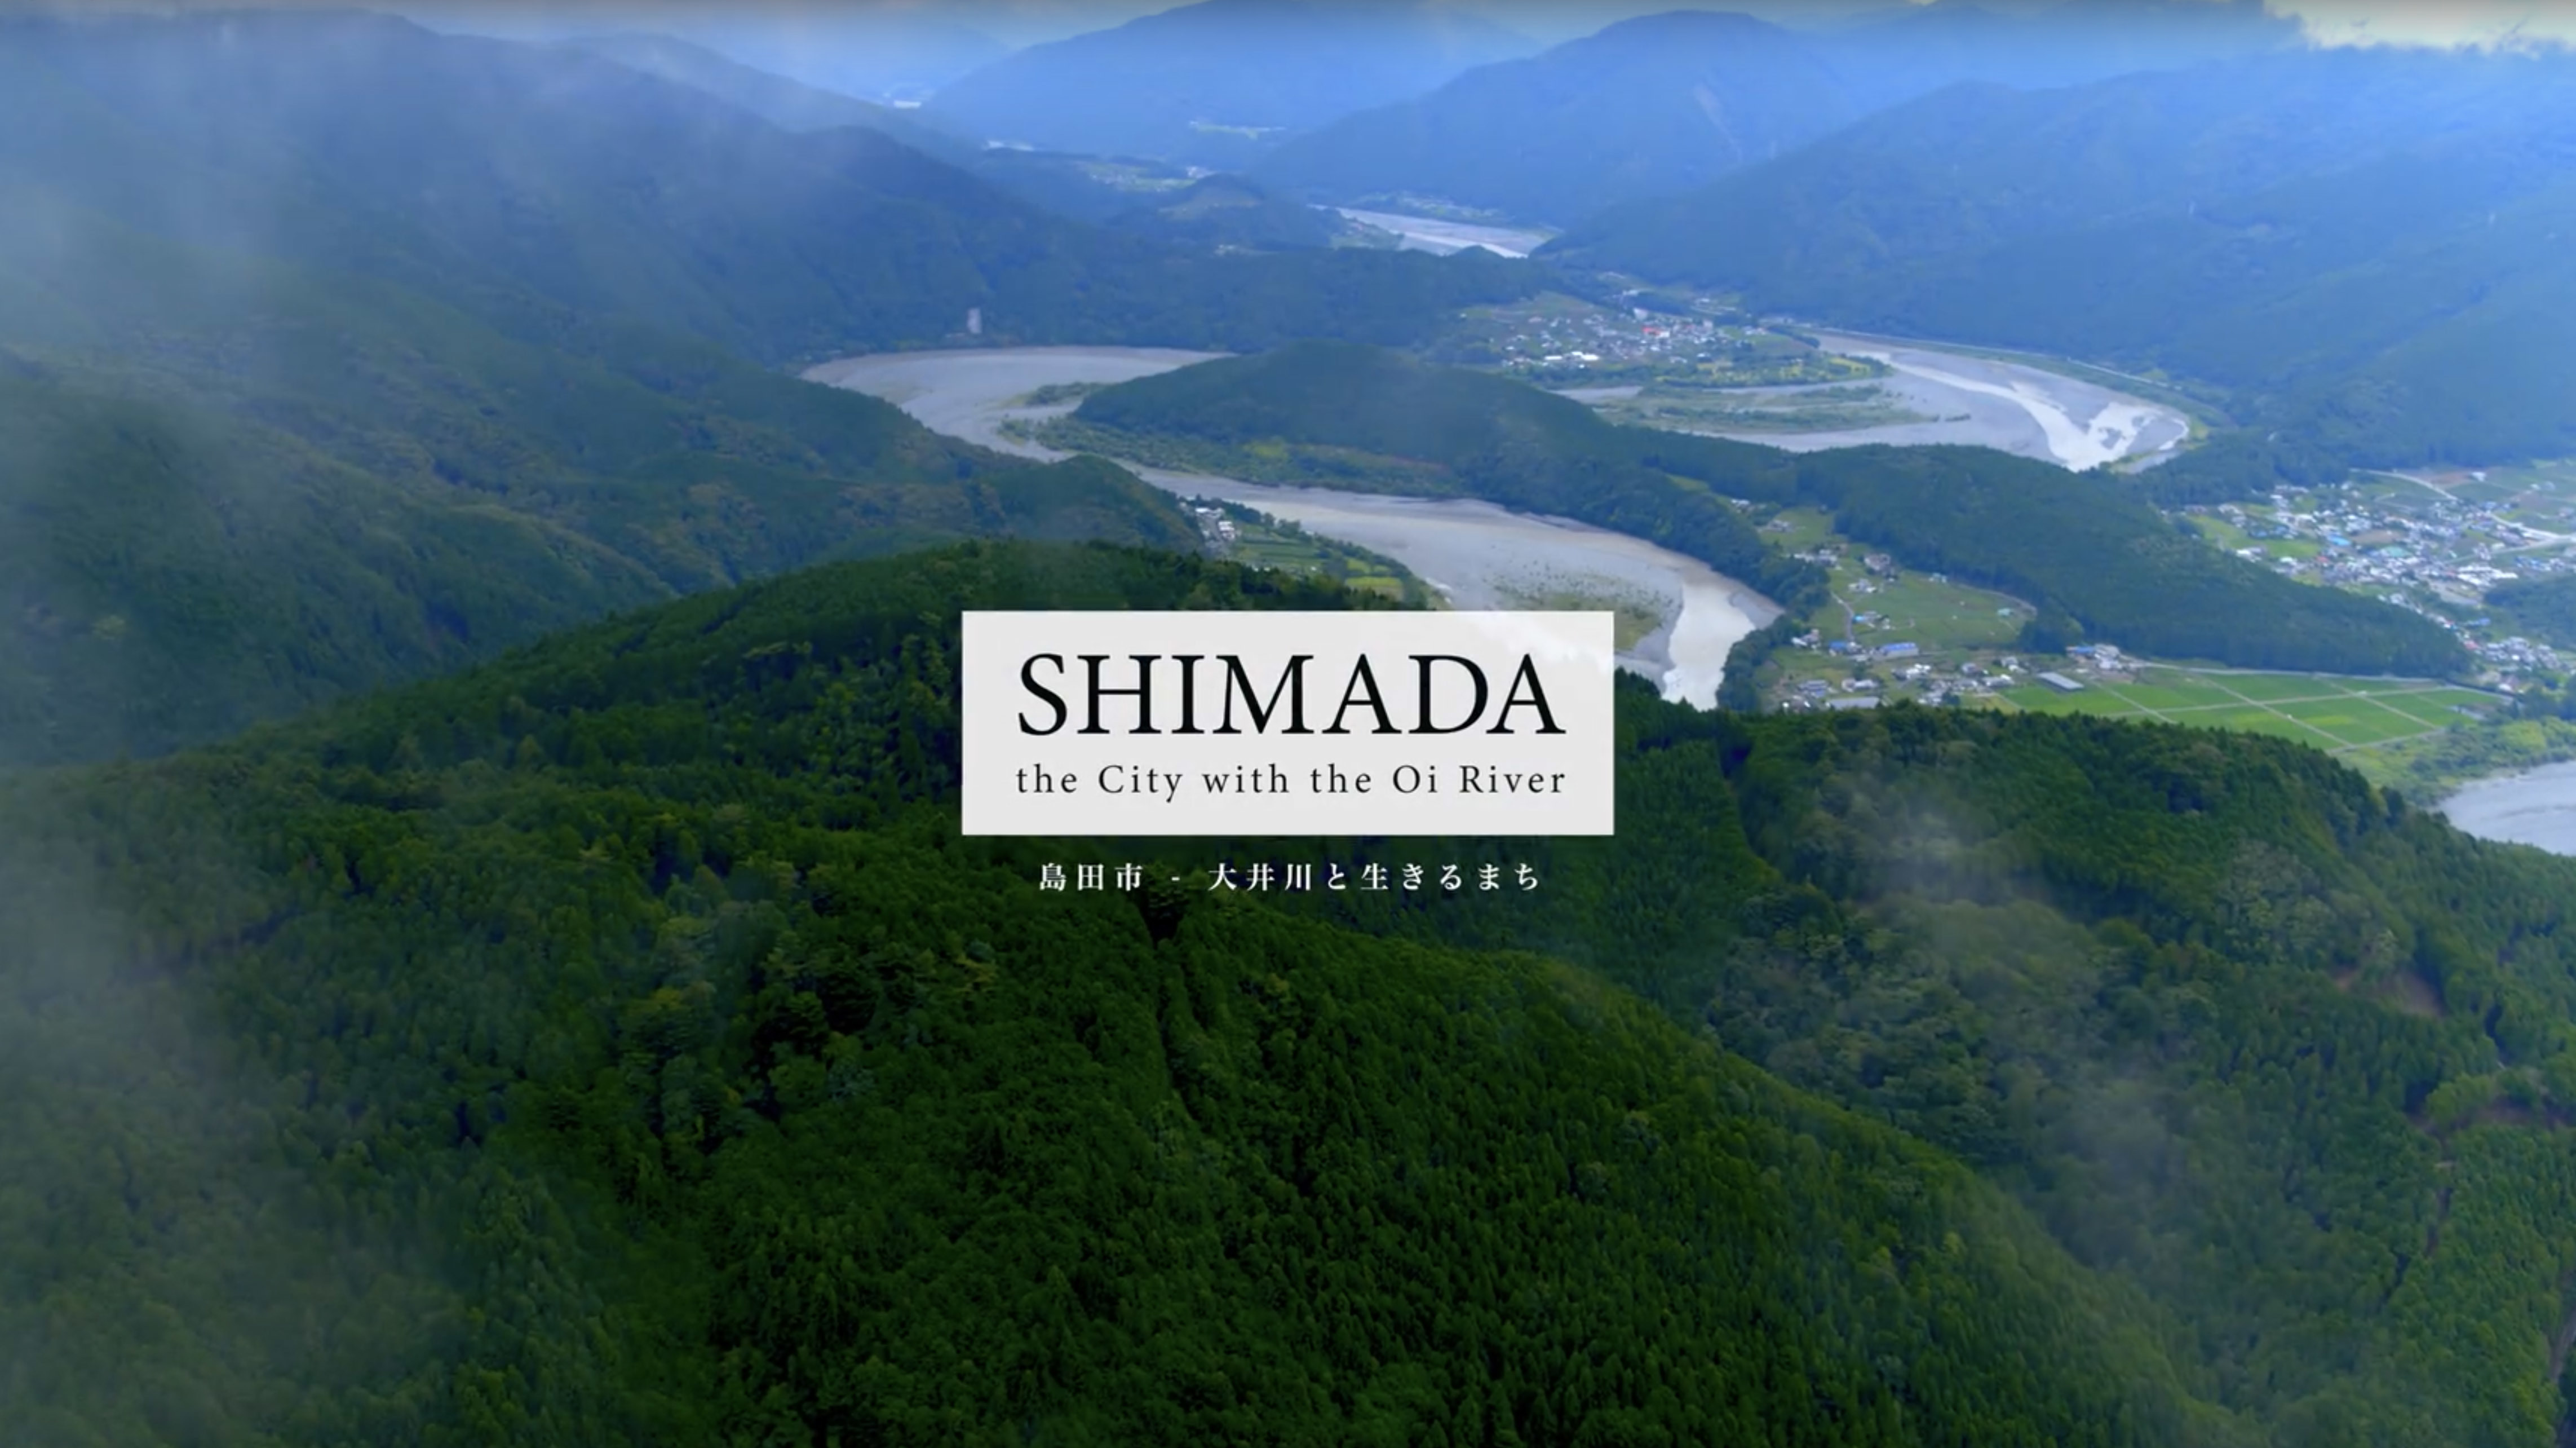 島田市プロモーション動画「SHIMADA the City with the Oi River」